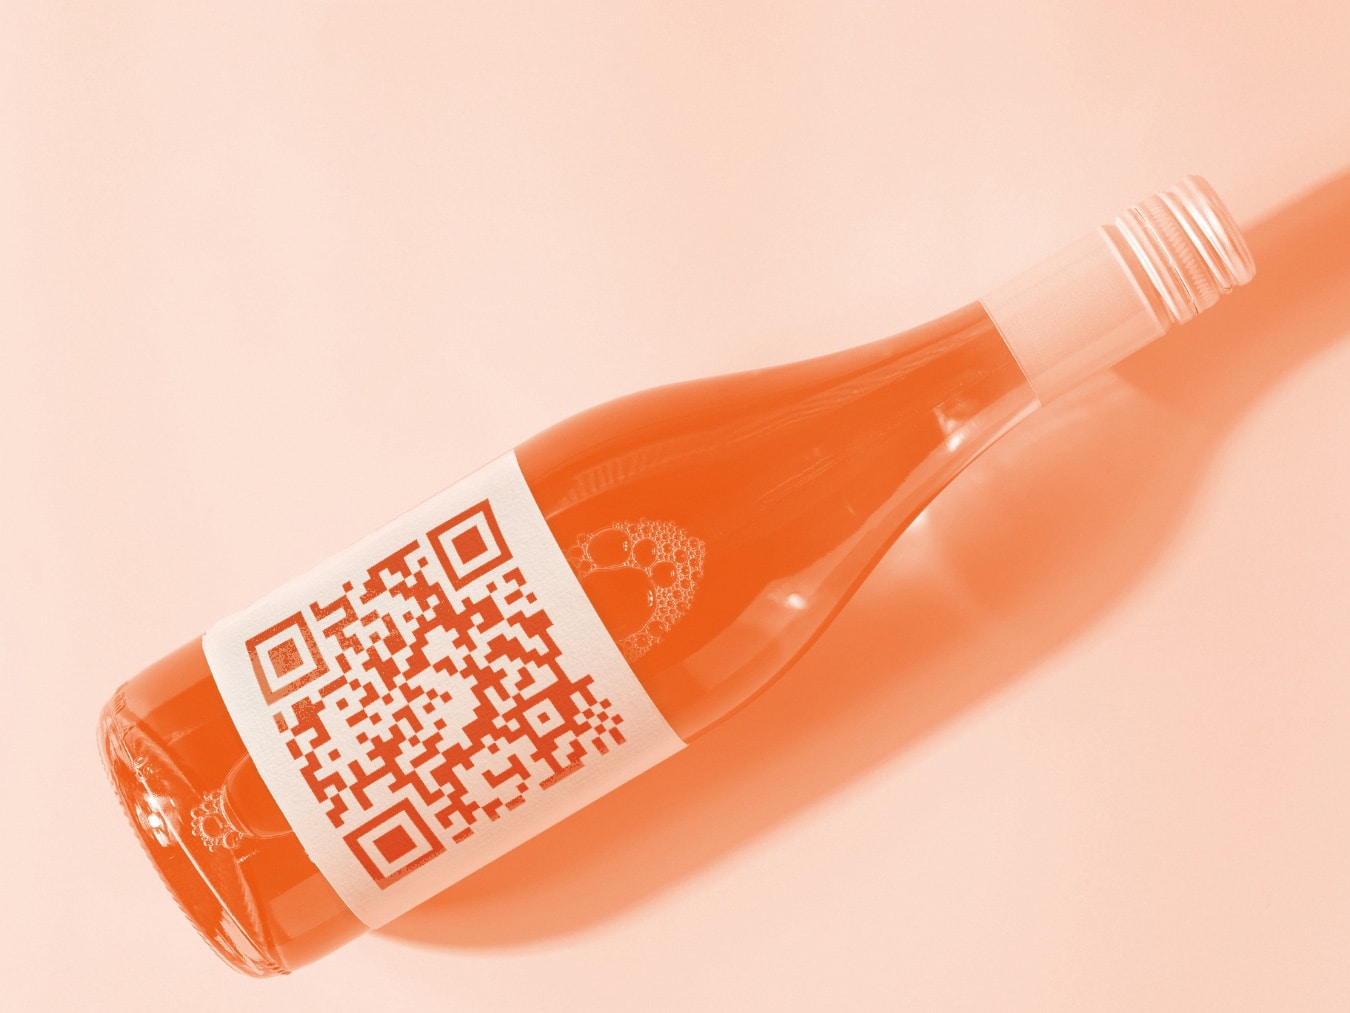 Nova normativa d'etiquetat de vins i alcohols